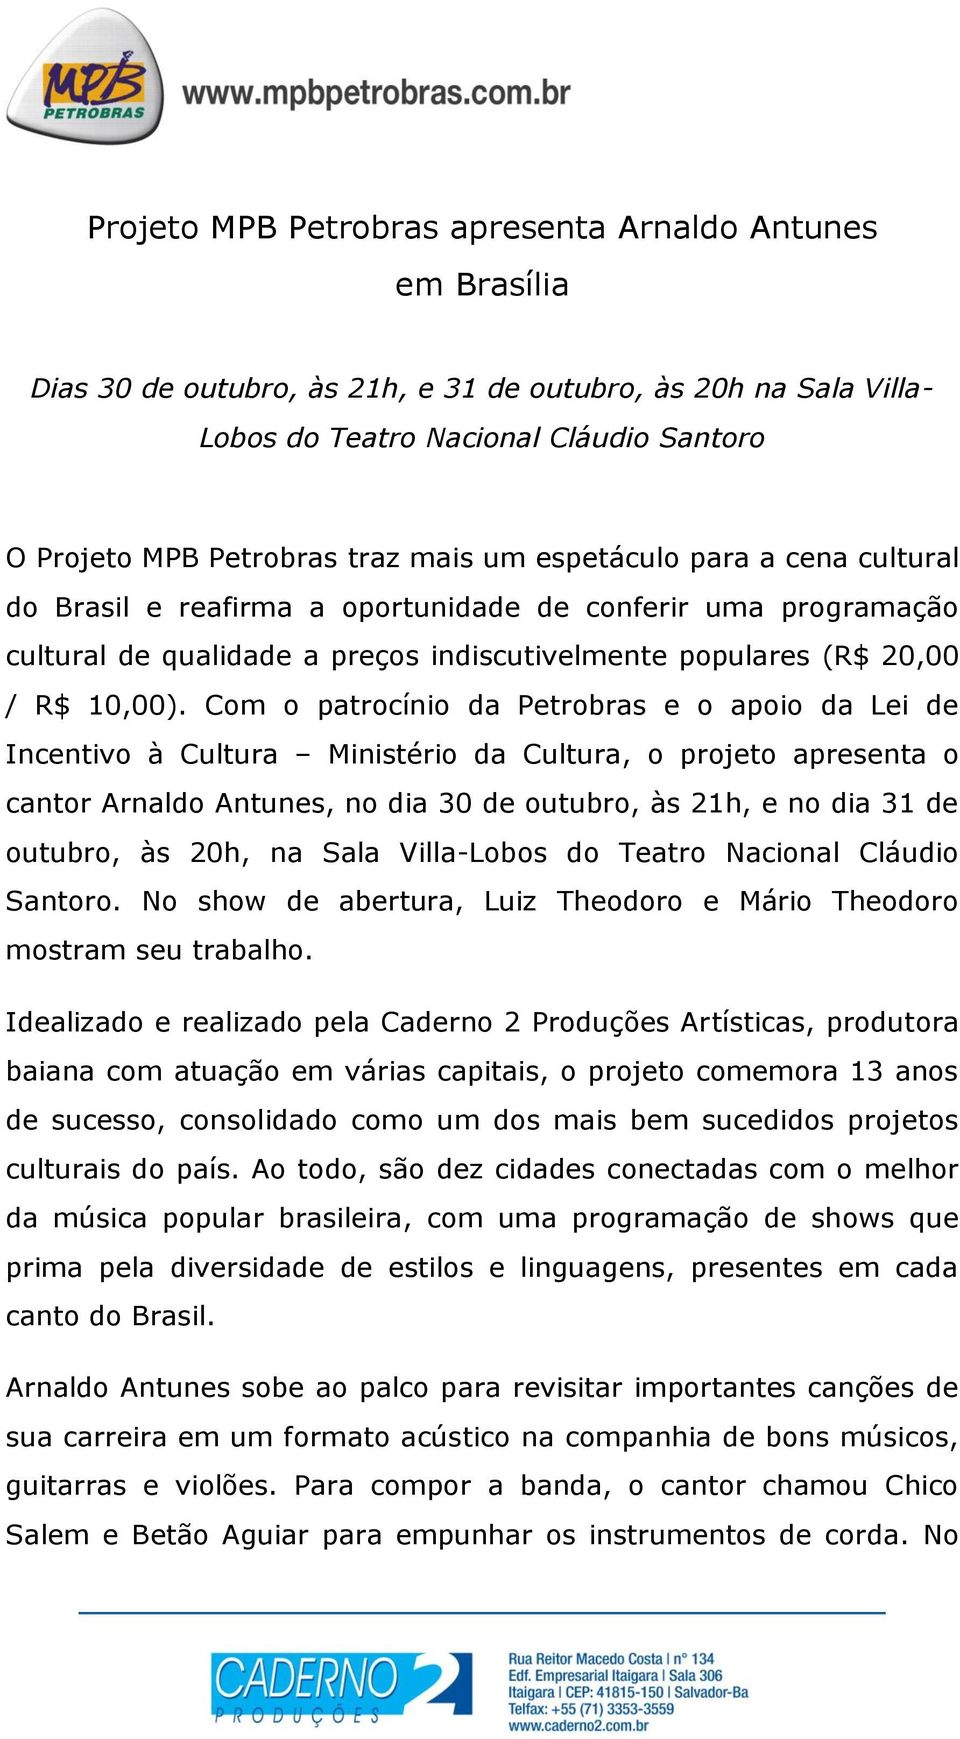 Com o patrocínio da Petrobras e o apoio da Lei de Incentivo à Cultura Ministério da Cultura, o projeto apresenta o cantor Arnaldo Antunes, no dia 30 de outubro, às 21h, e no dia 31 de outubro, às